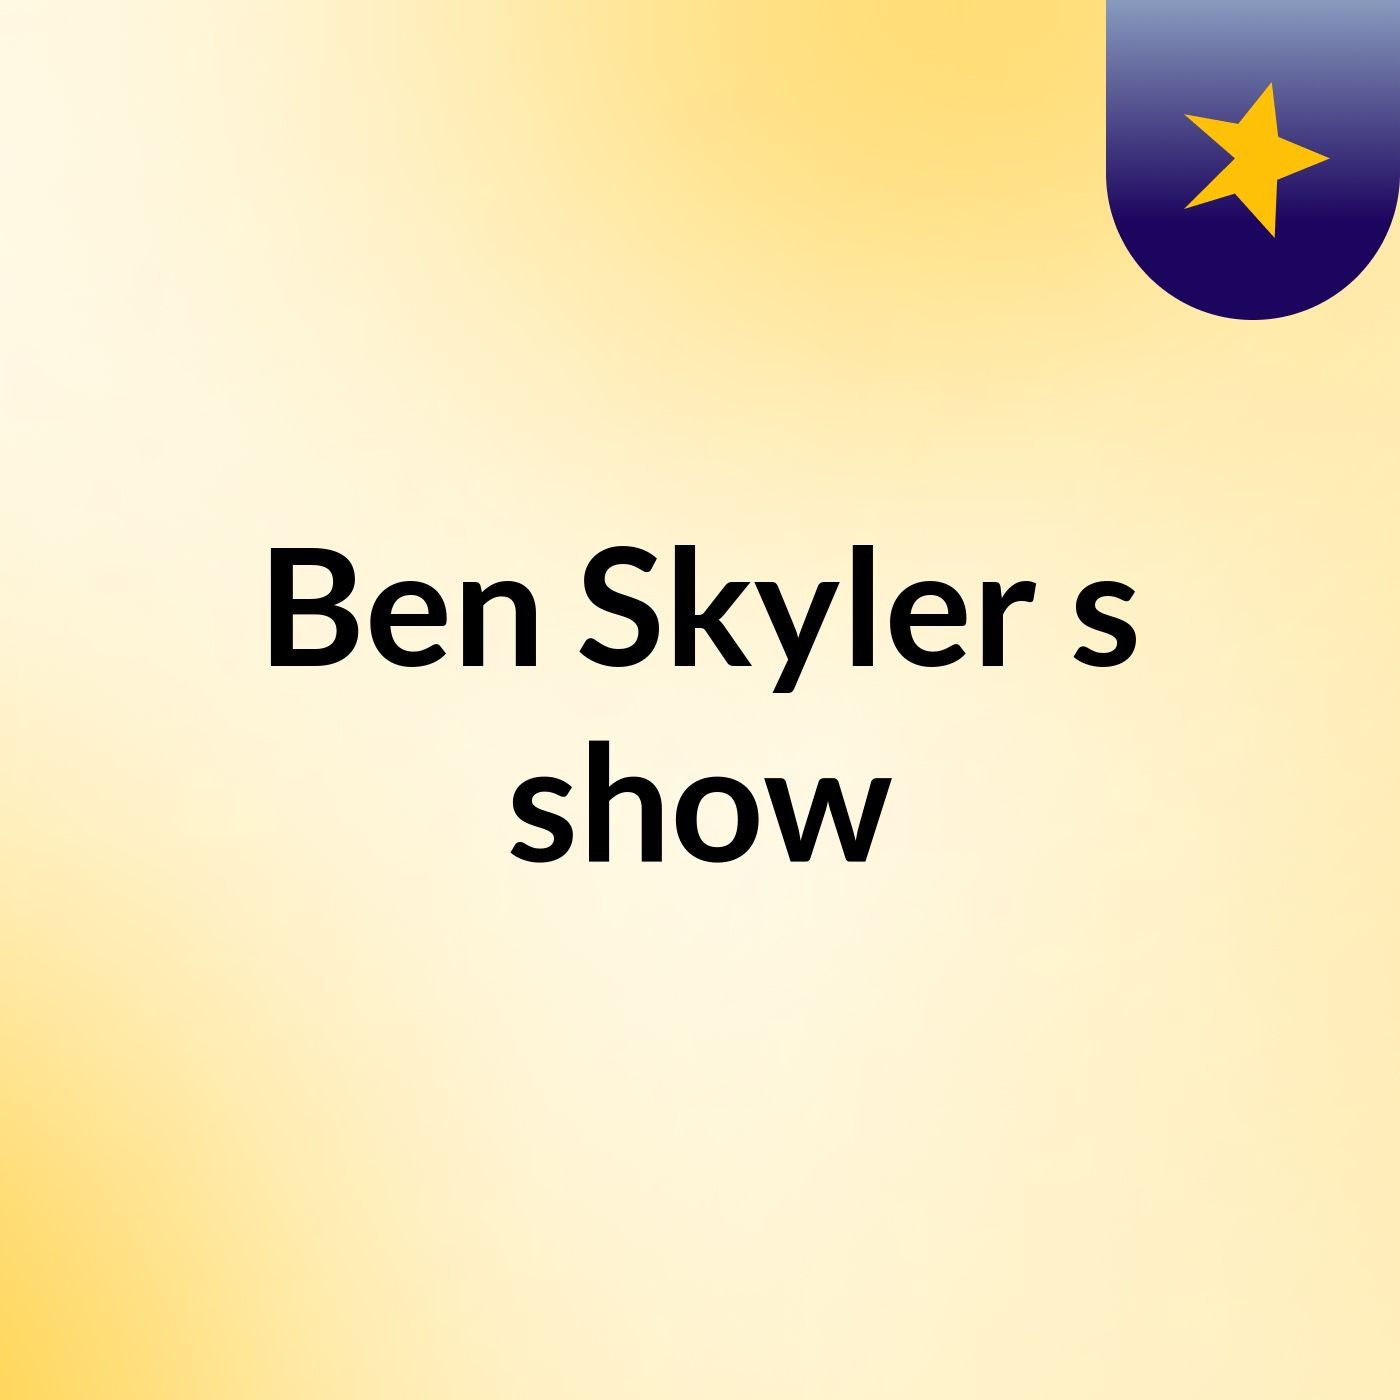 Ben Skyler's show